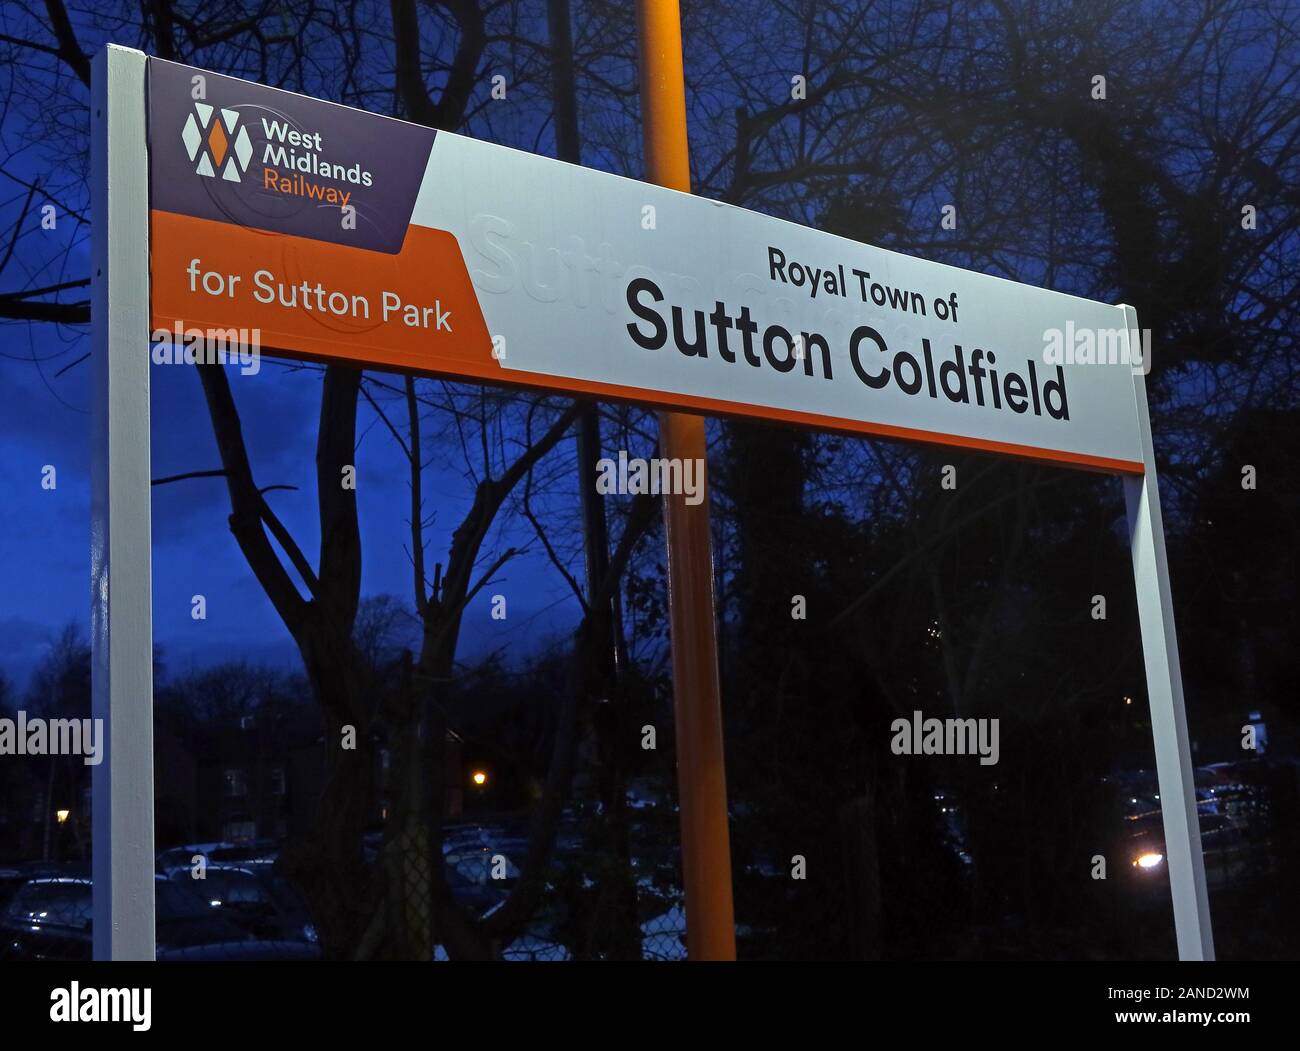 Ville royale de Sutton Coldfield signer sur station de chemin de fer, West Midlands, Birmingham, Angleterre, RU Banque D'Images